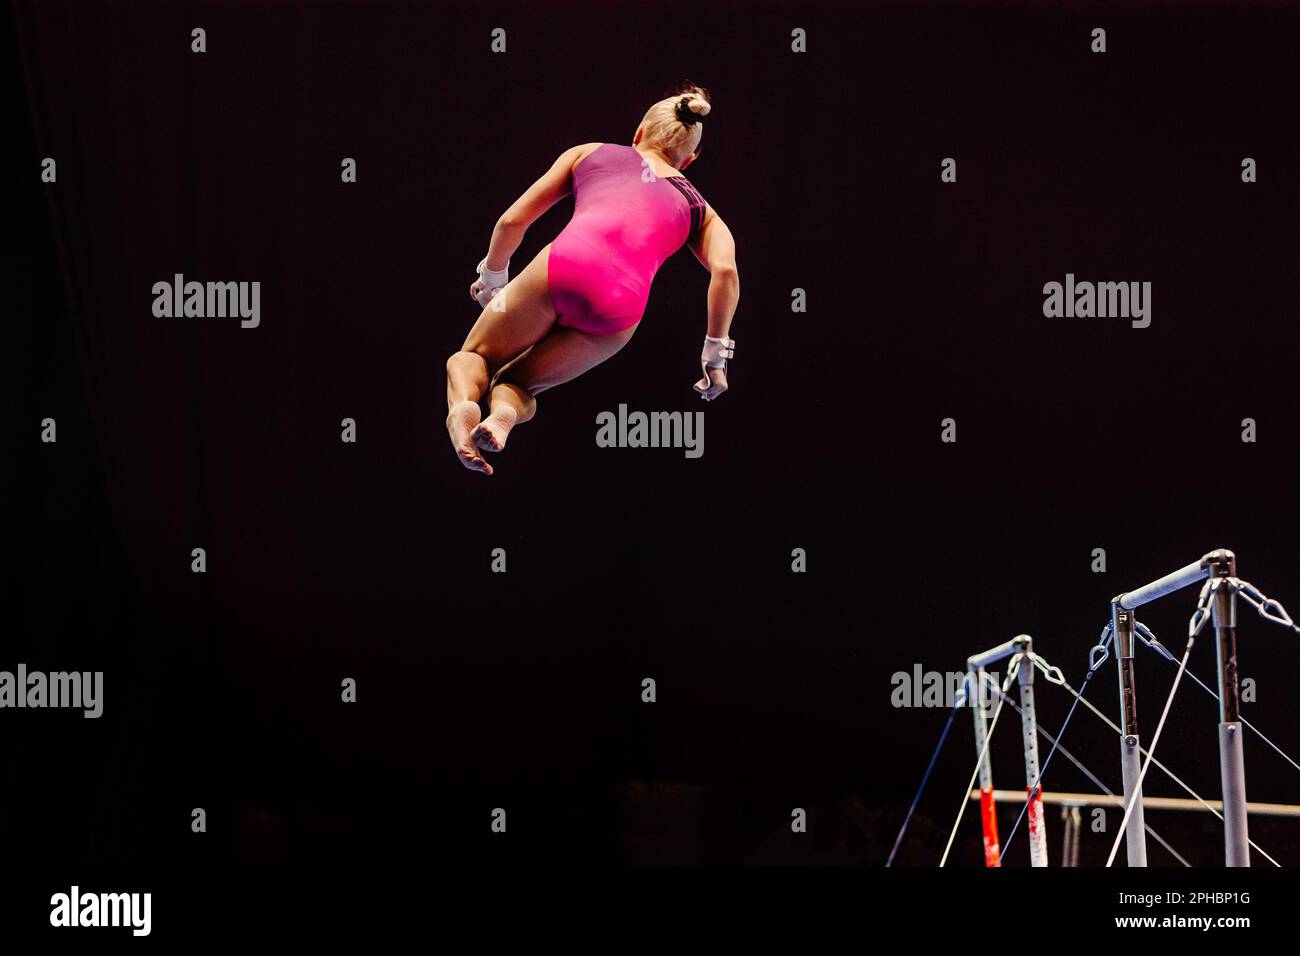 gymnaste féminine exécutant la gymnastique de somersault sur des barres inégales, fond noir, sports olympiques inclus dans les jeux d'été Banque D'Images